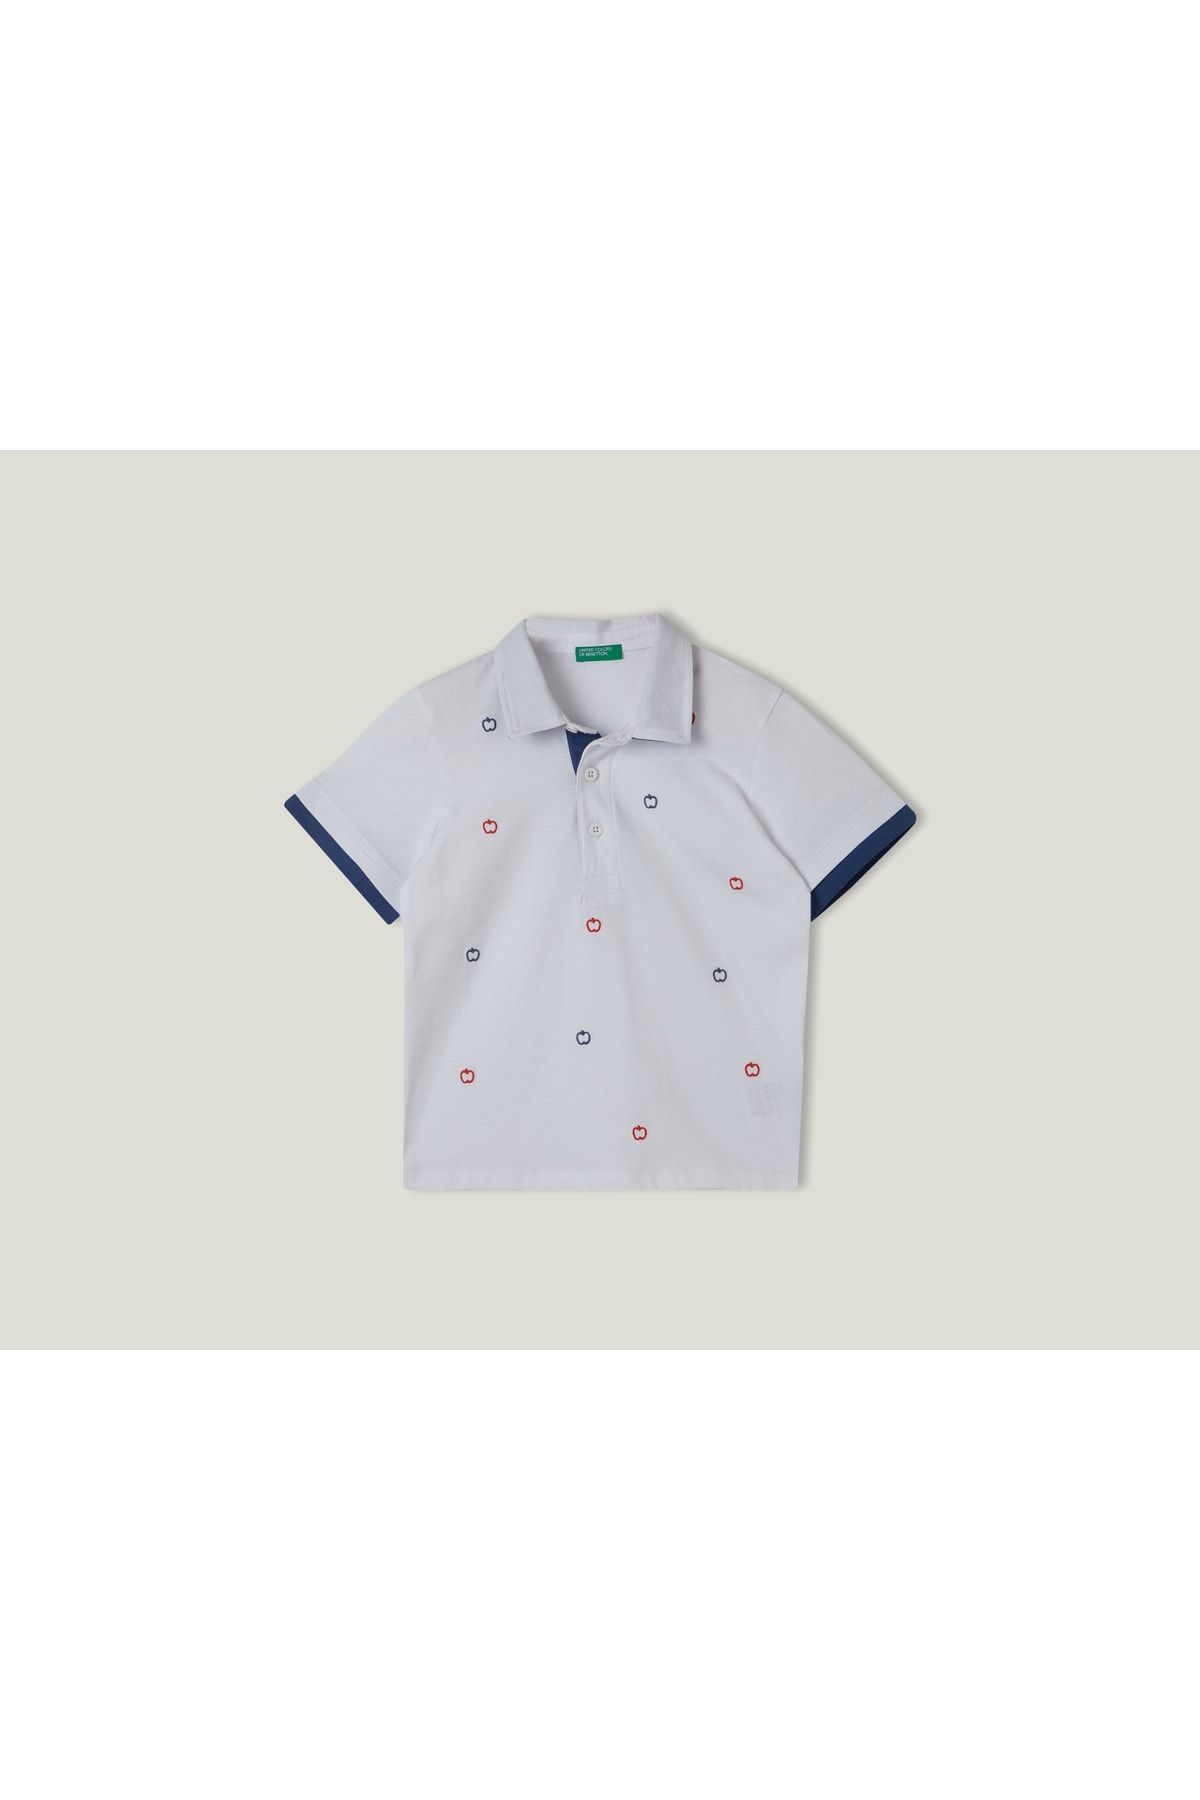 United Colors of Benetton Erkek Çocuk Beyaz Elma İşlemeli Polo T-Shirt Beyaz